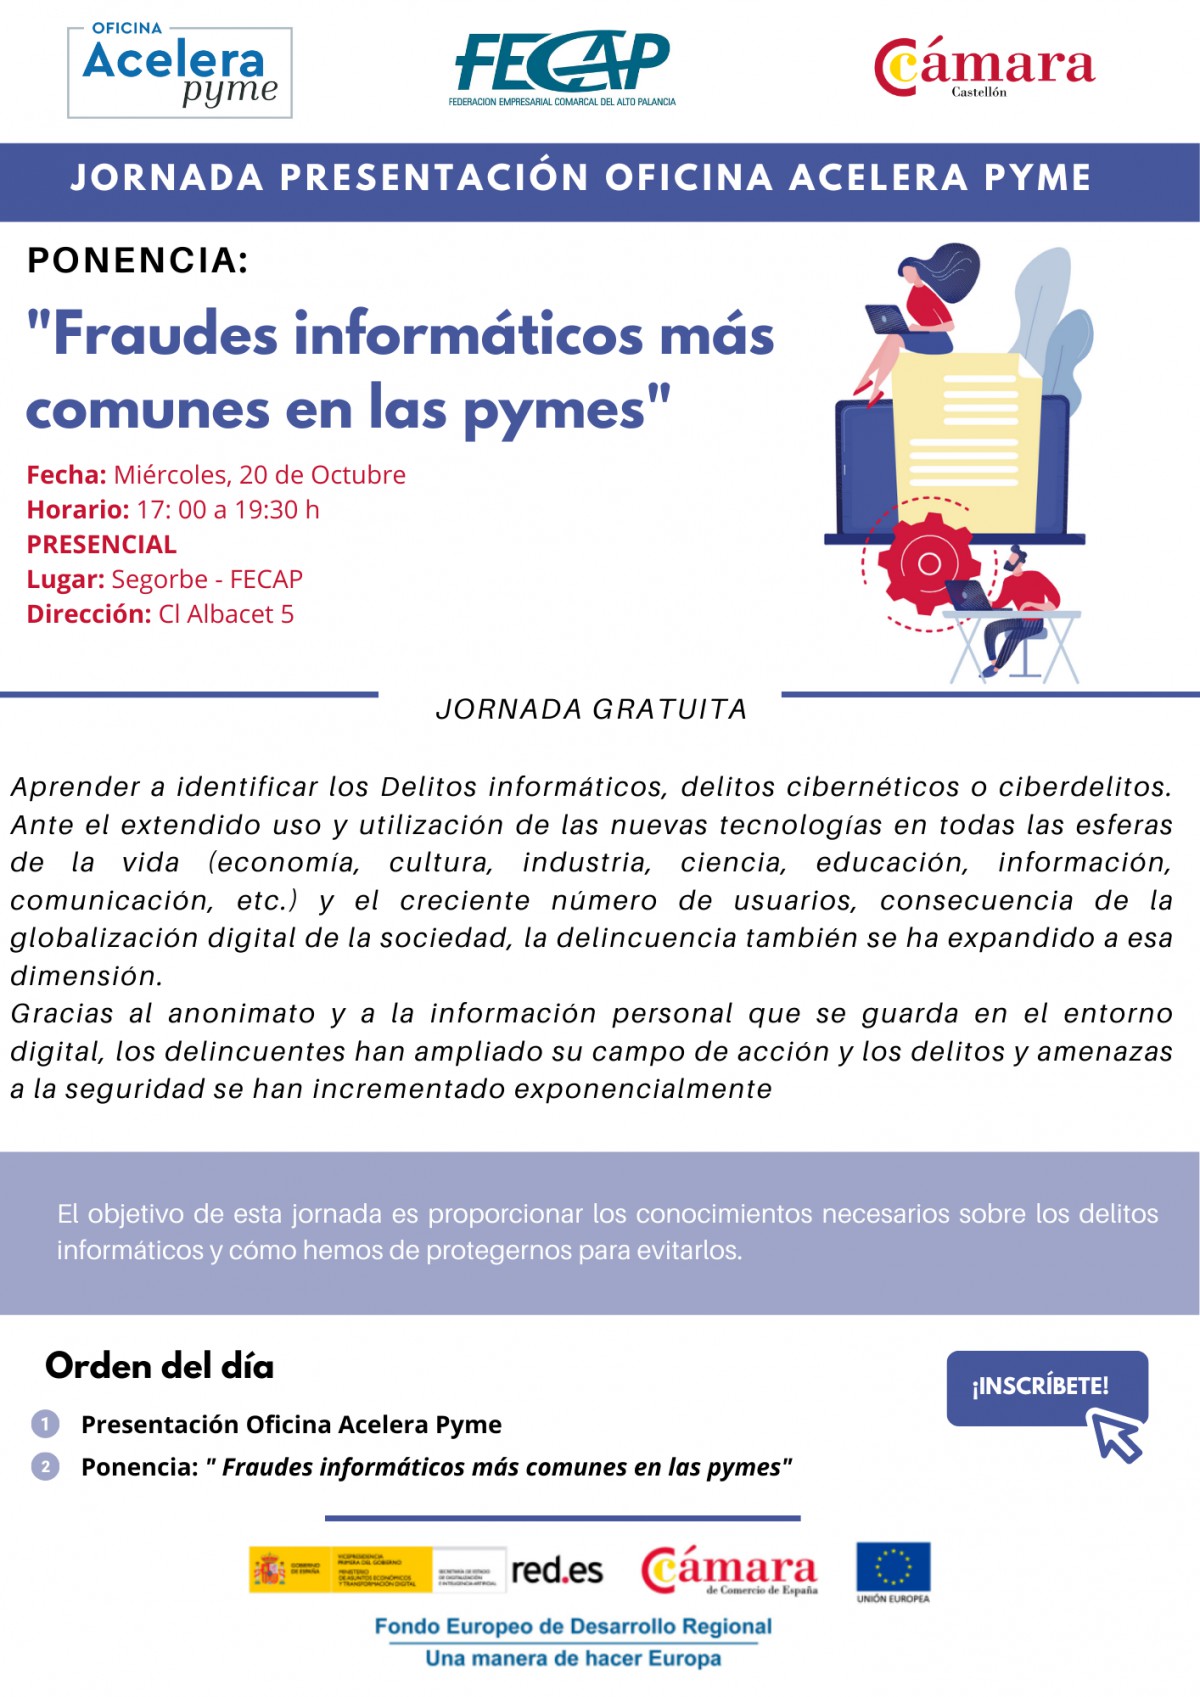 JORNADA PRESENTACIÓN OFICINA ACELERA PYME - PONENCIA "FRAUDES INFORMÁTICOS MÁS COMUNES EN LAS PYME"